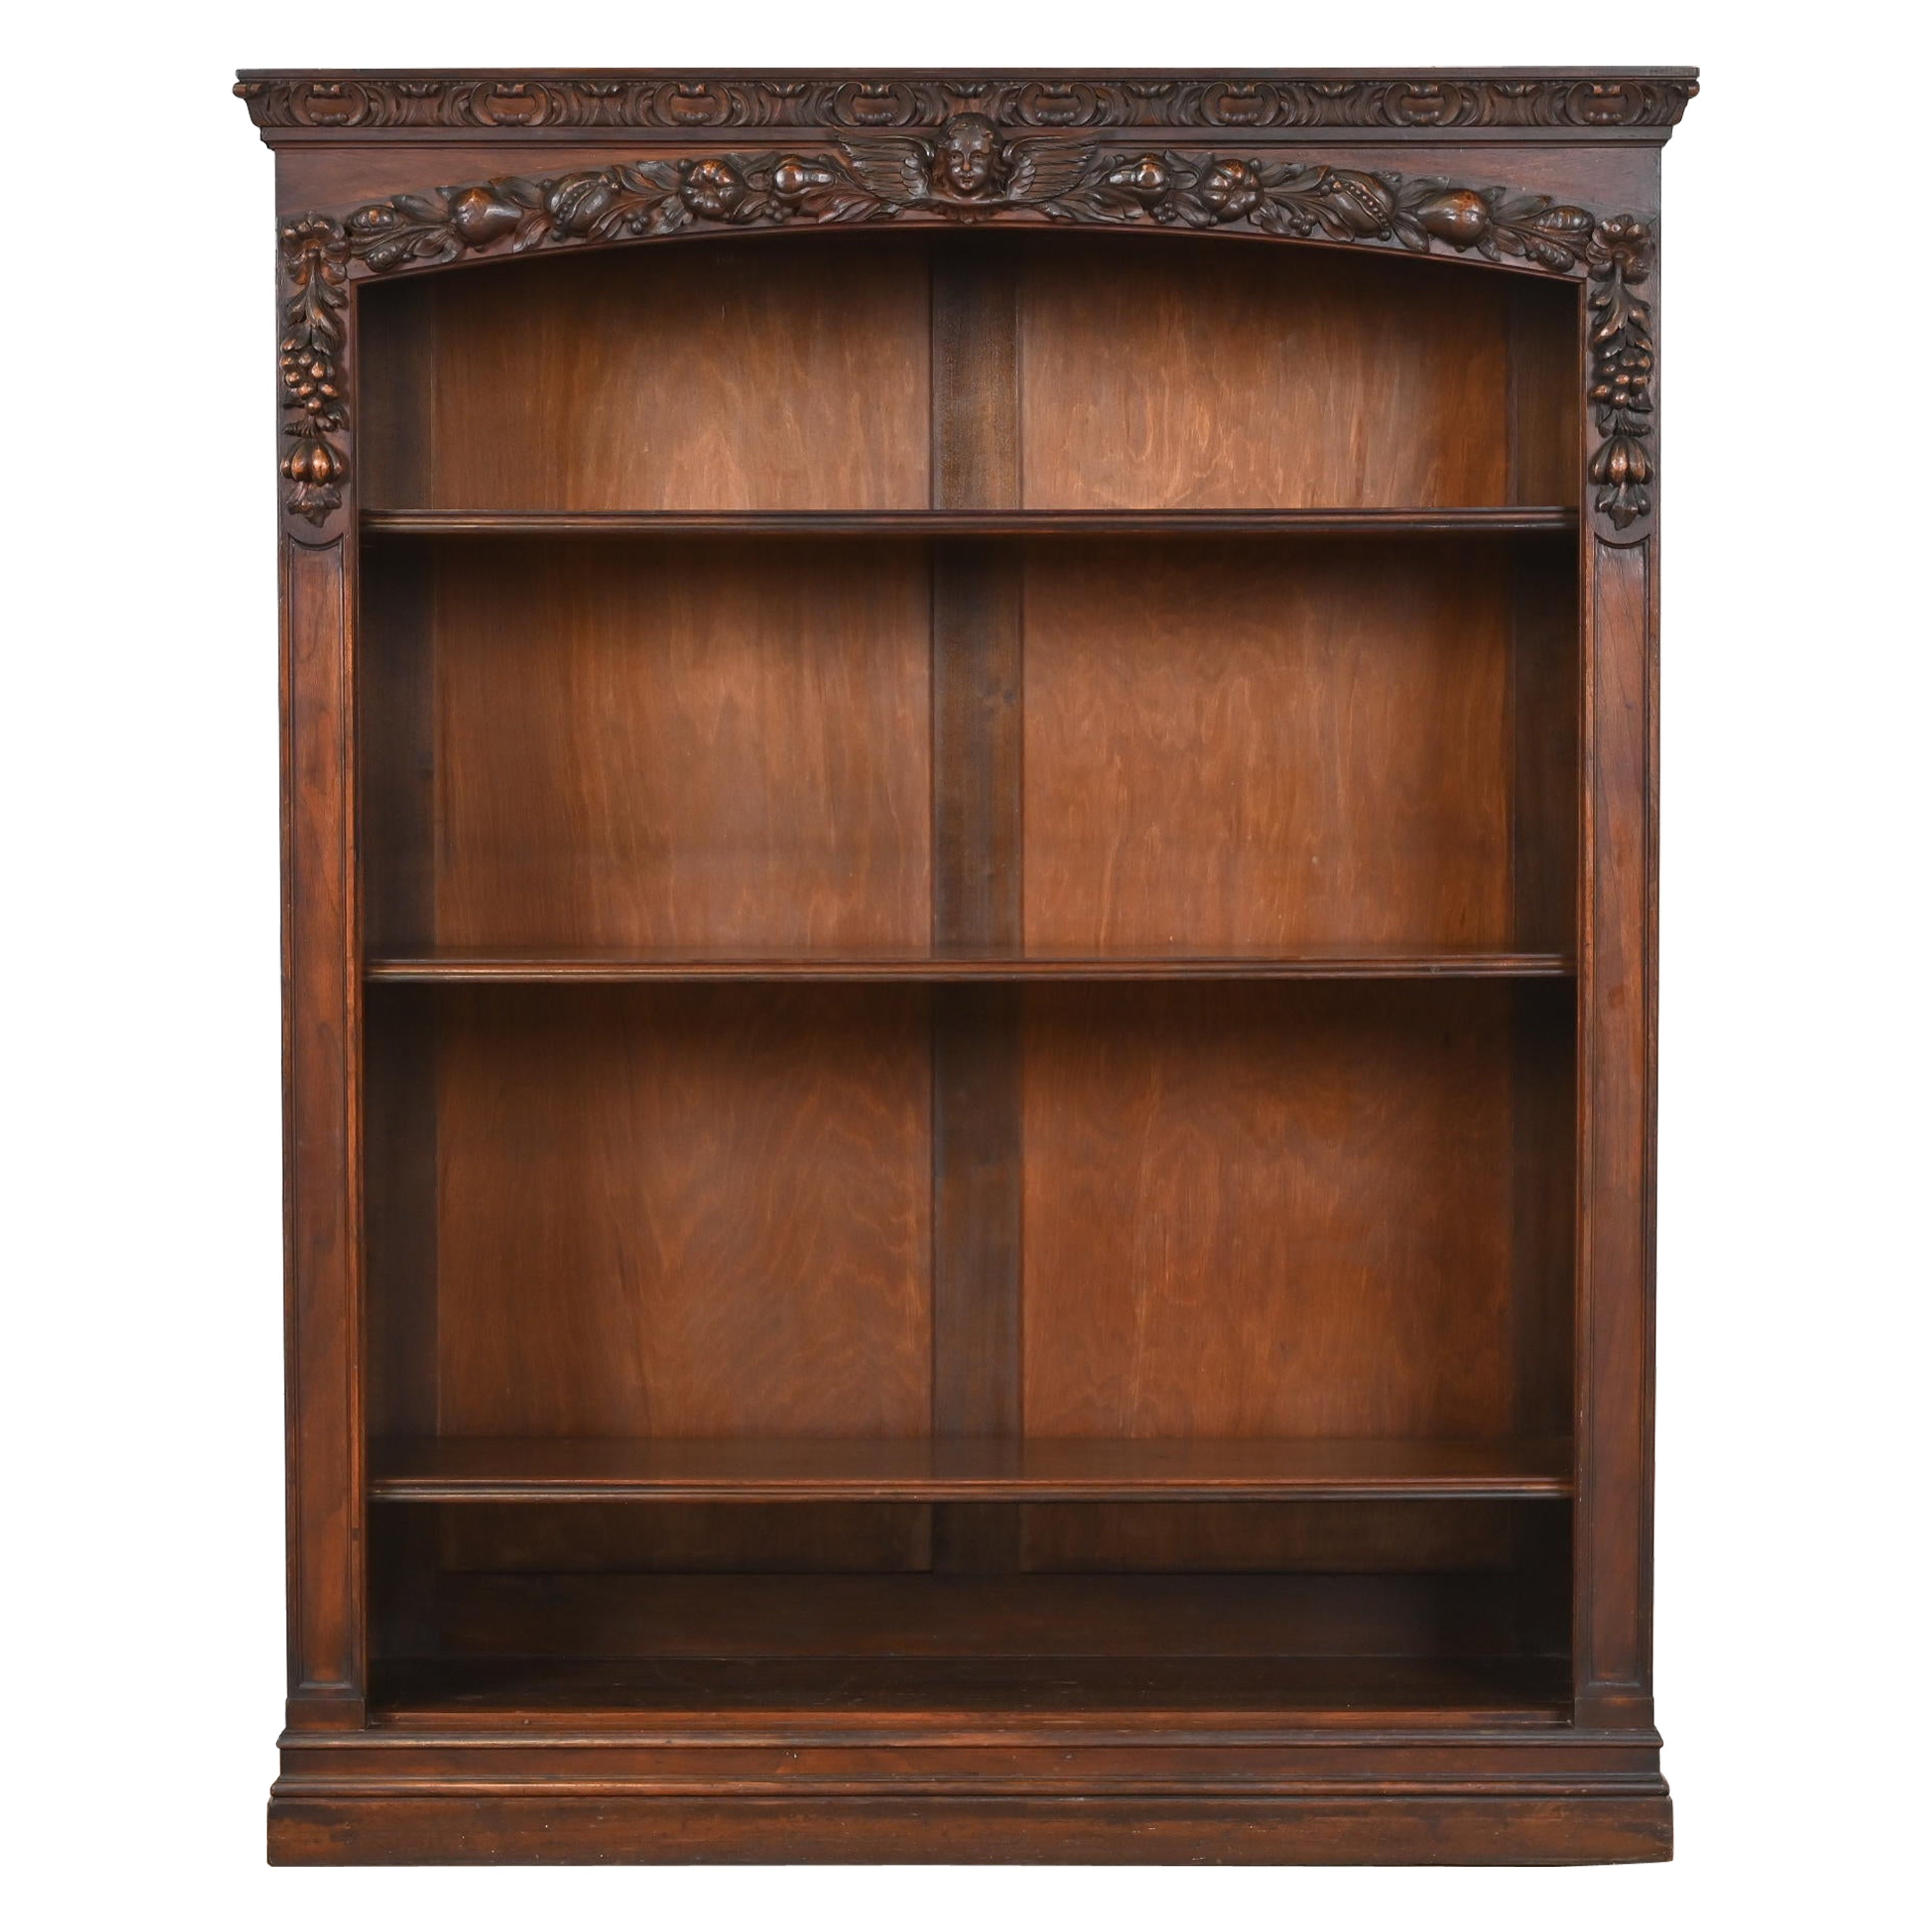 R.J. Horner Style Antique Victorian Renaissance Revival Walnut Bookcase For Sale